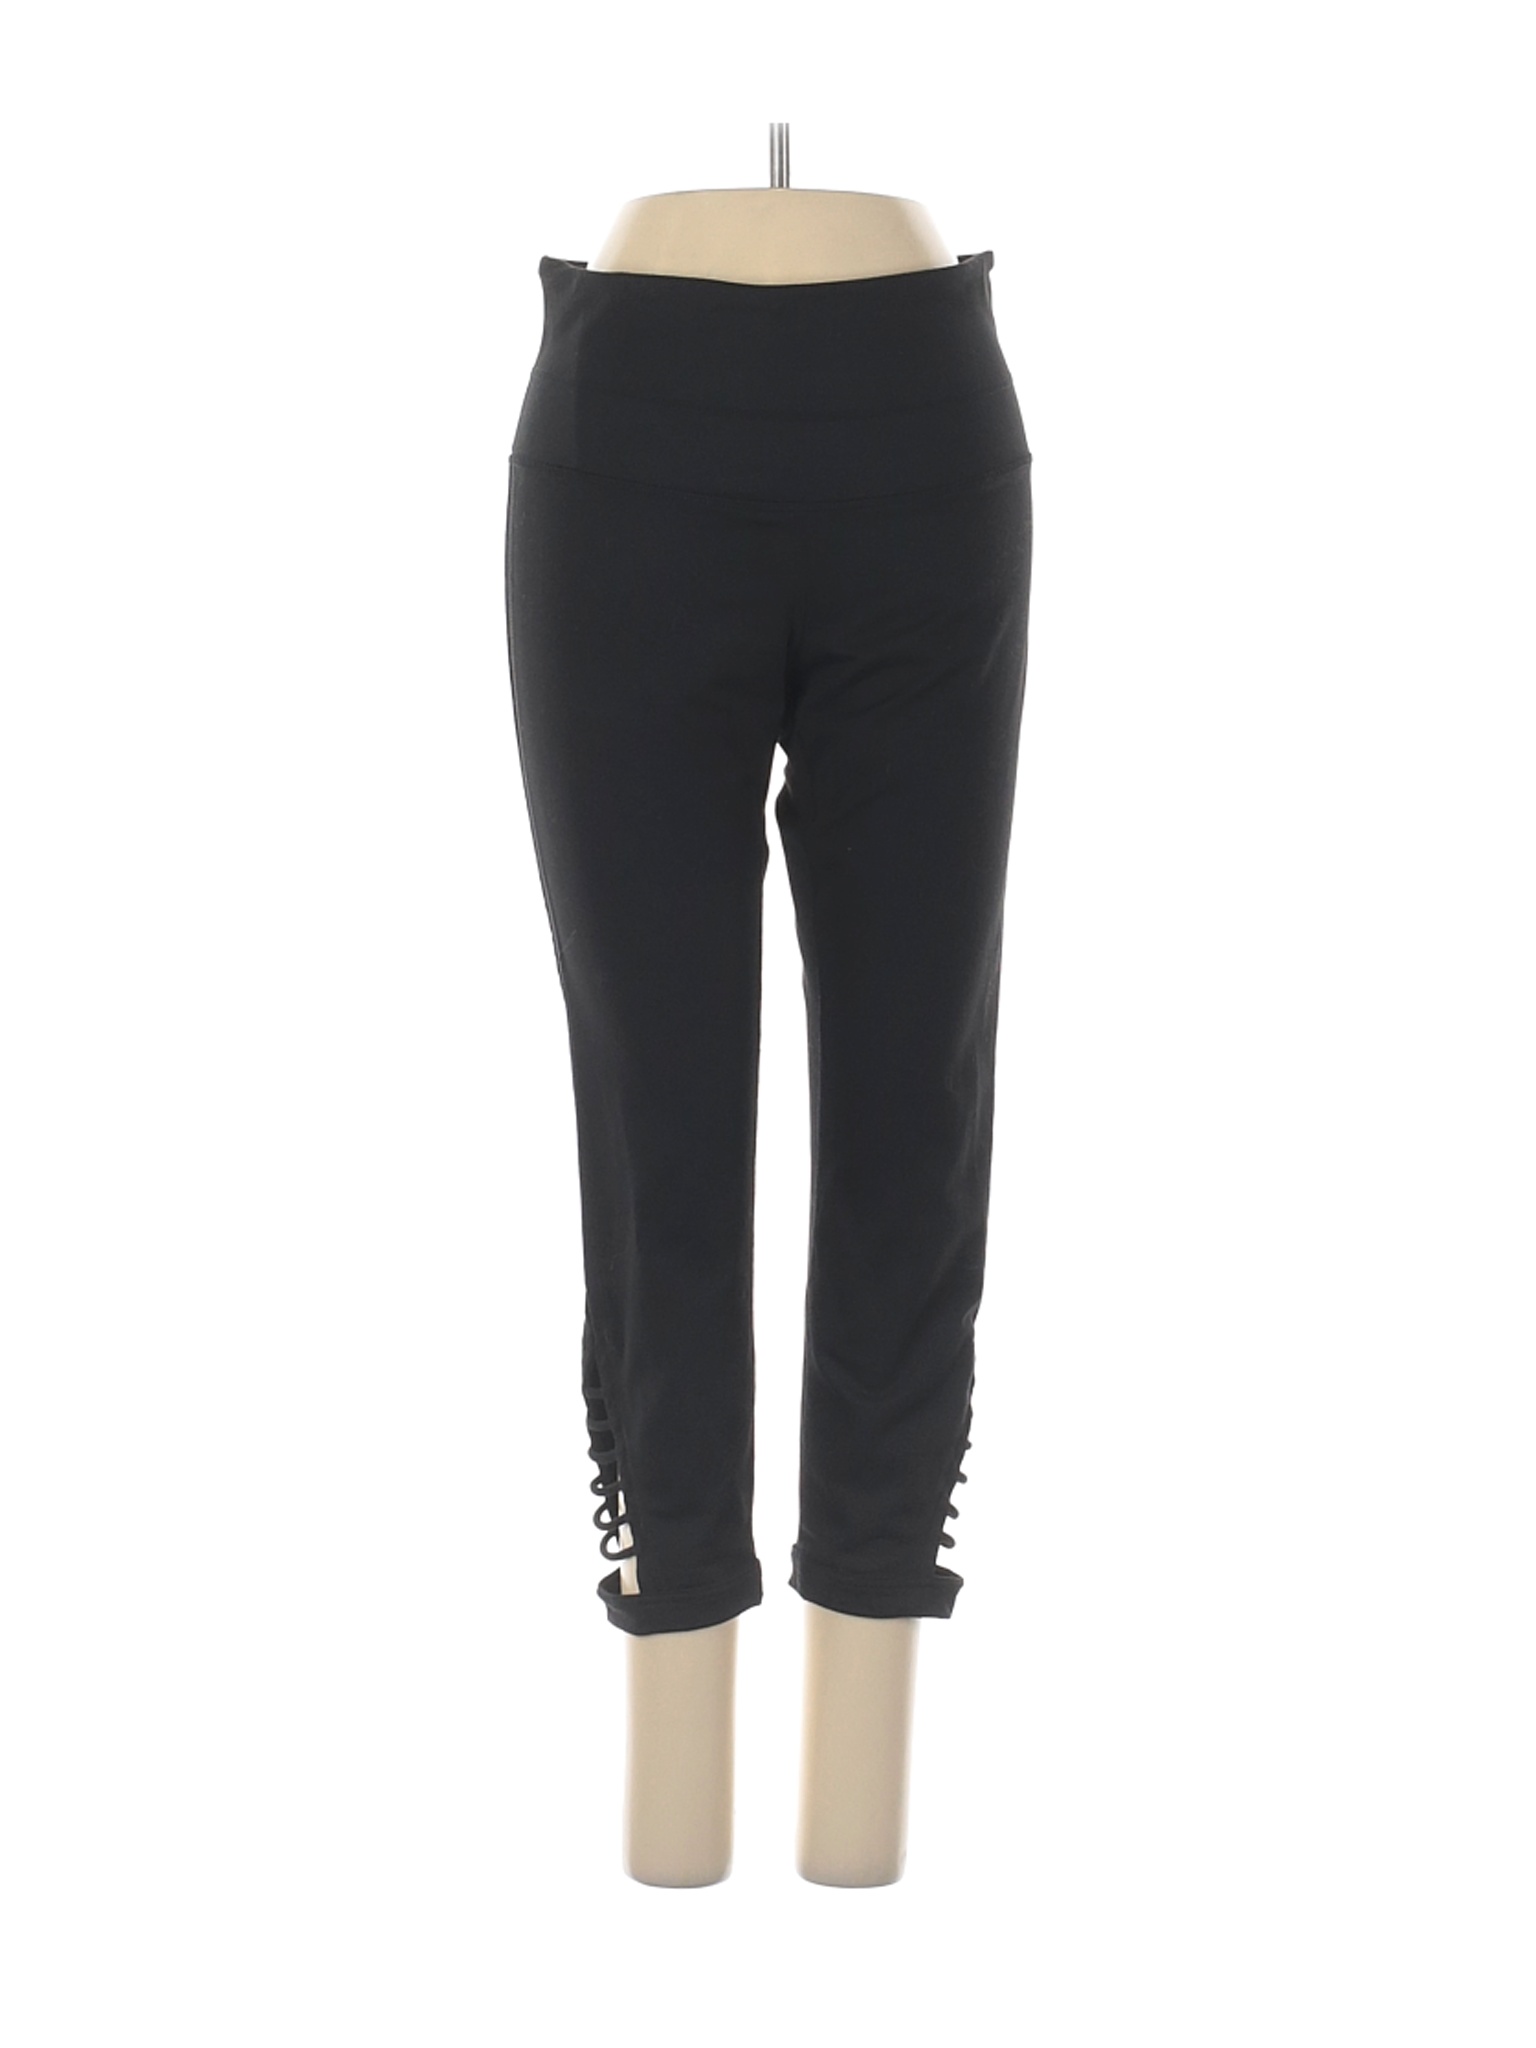 Zella Women Black Active Pants S | eBay